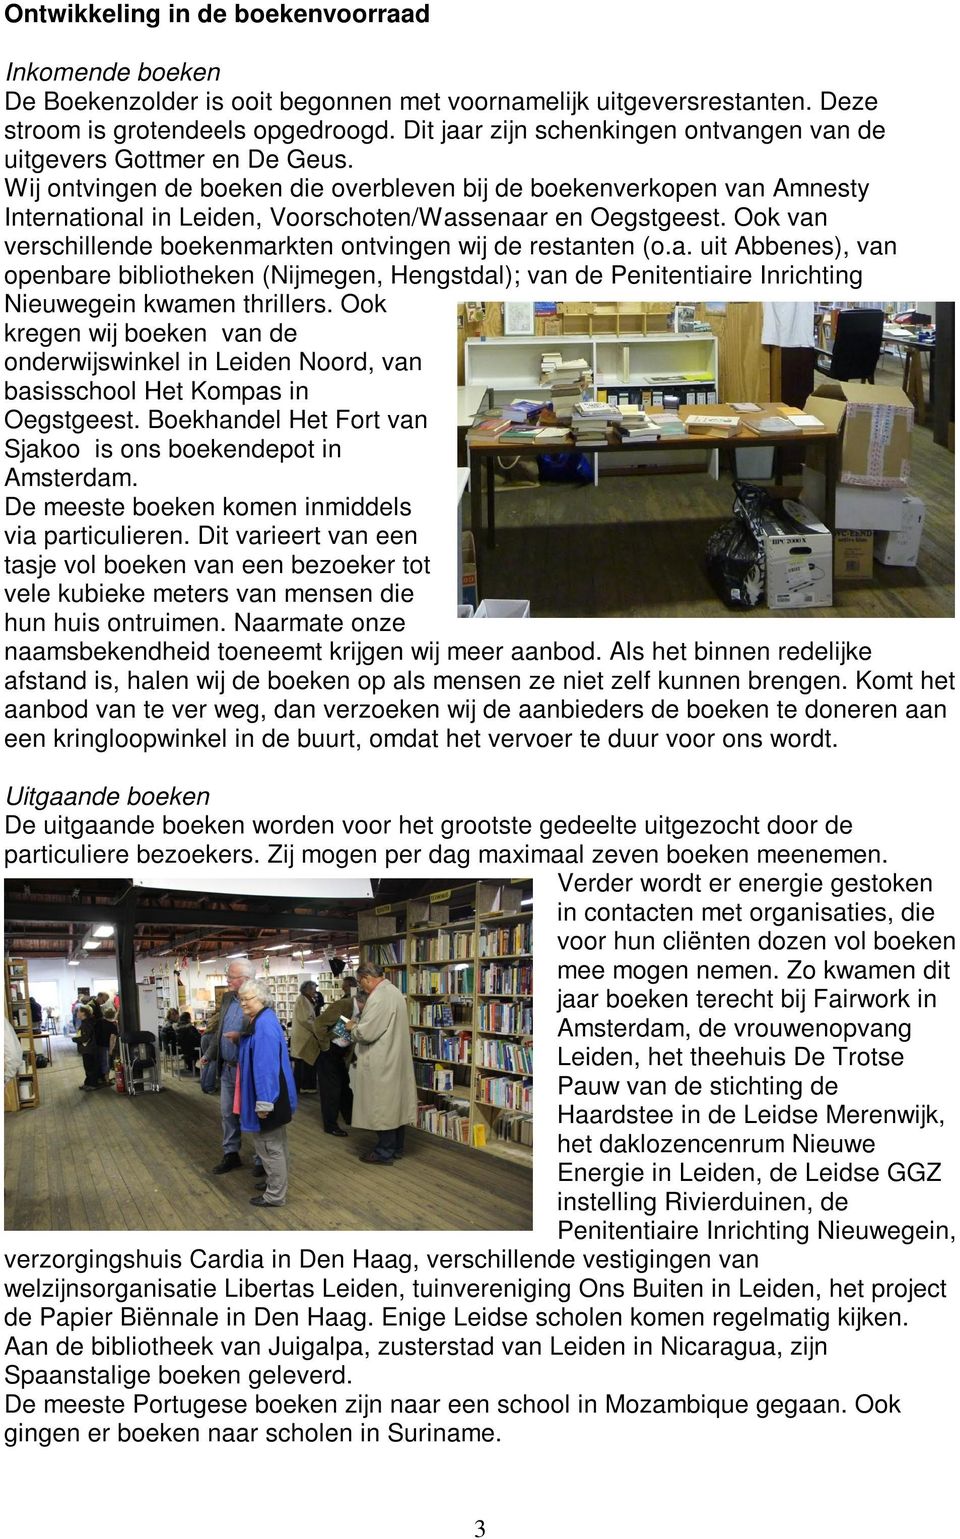 Wij ontvingen de boeken die overbleven bij de boekenverkopen van Amnesty International in Leiden, Voorschoten/Wassenaar en Oegstgeest.